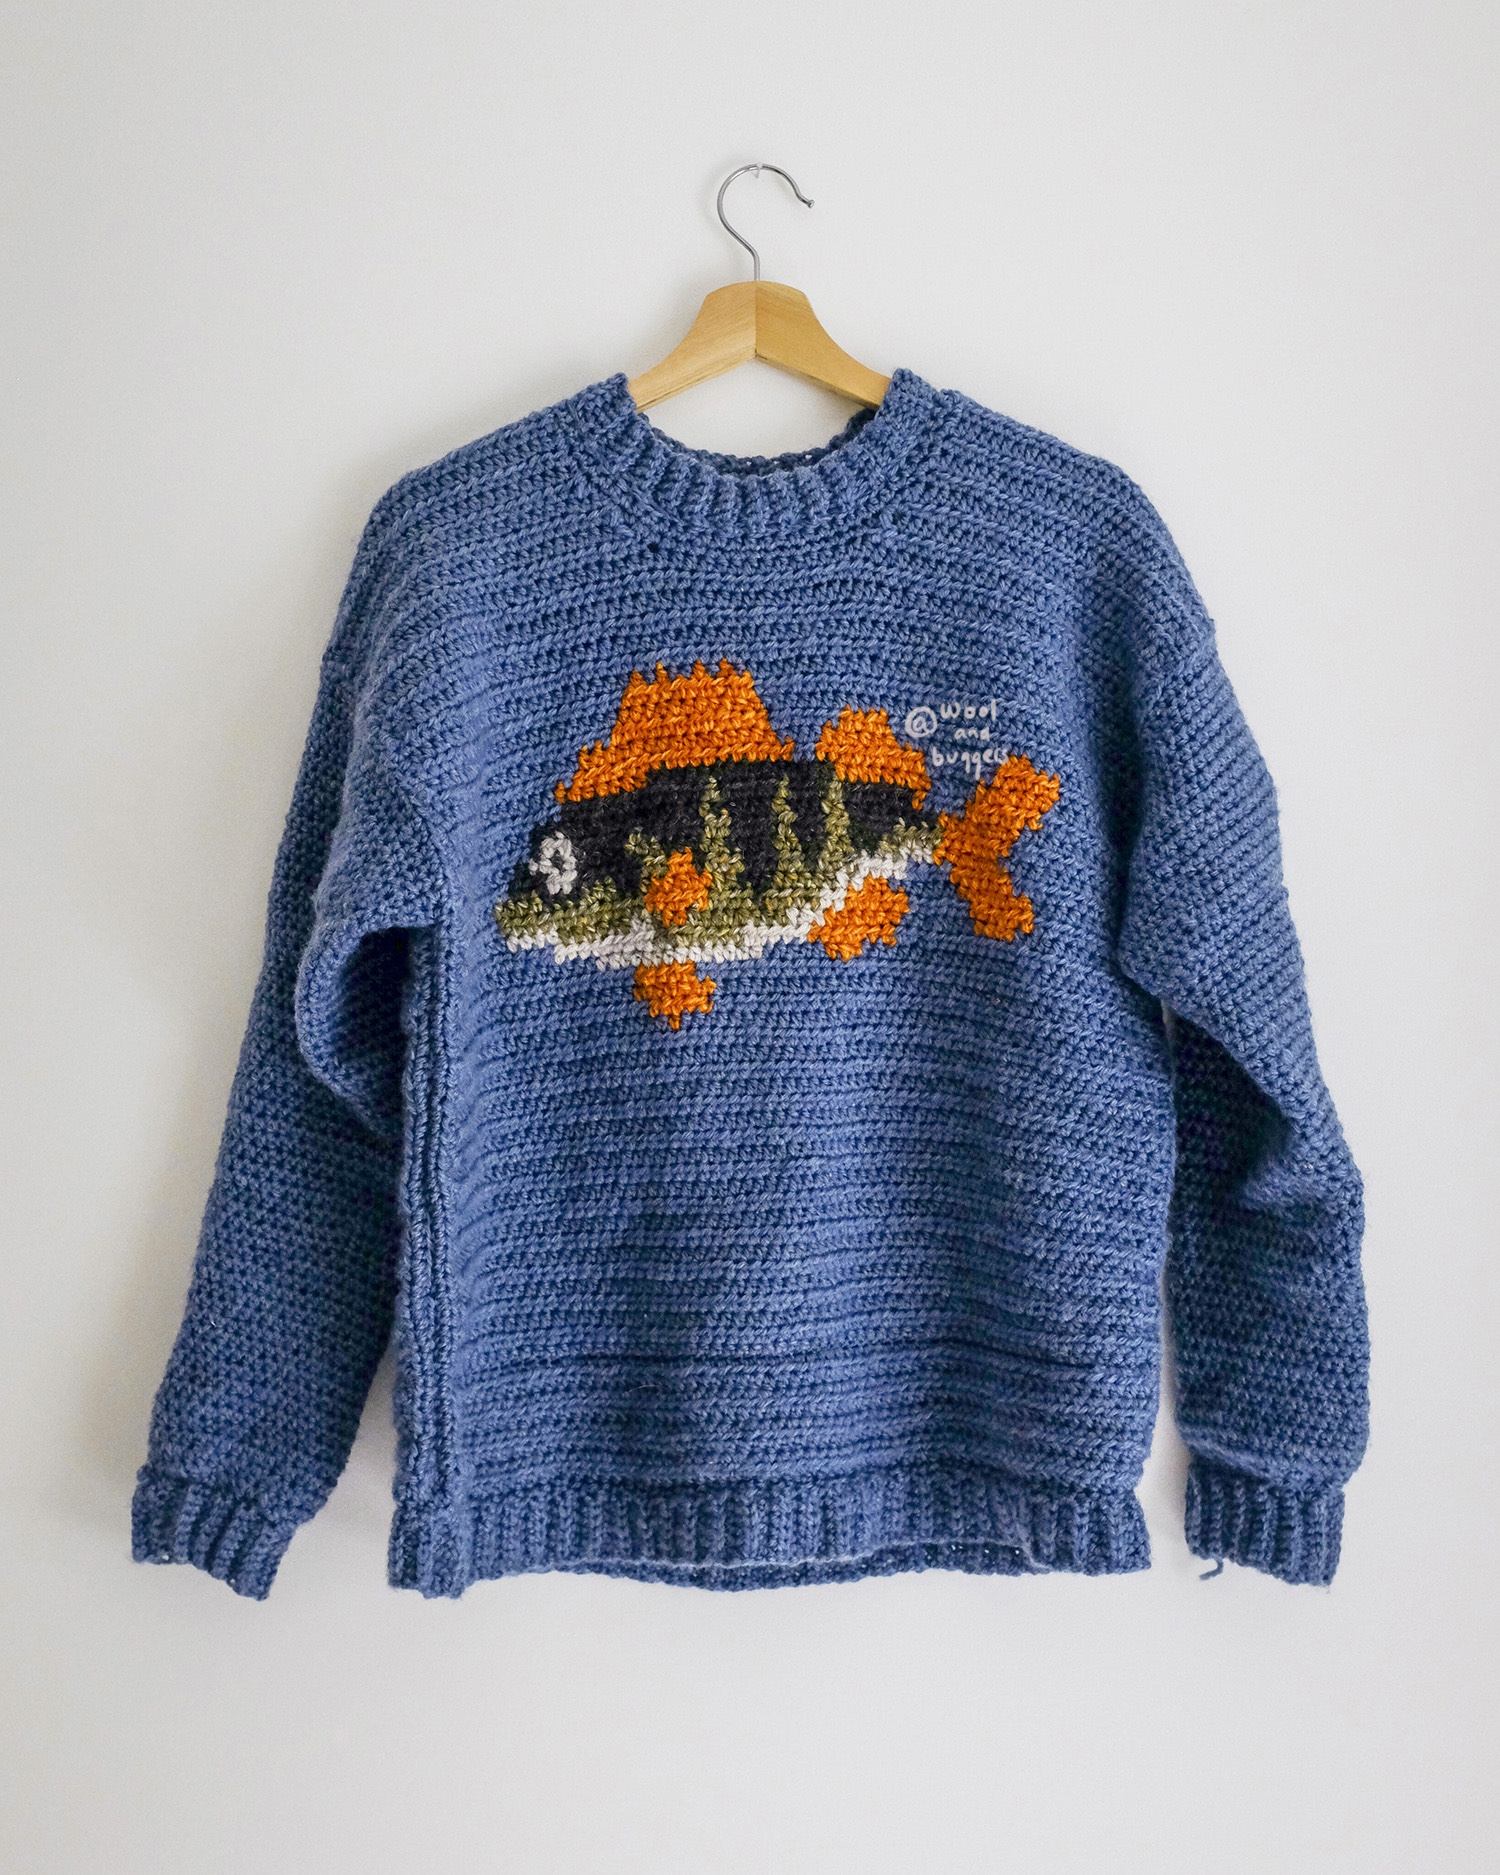 fishy aleks crochet sweater pattern - WOOL & BUGGERS